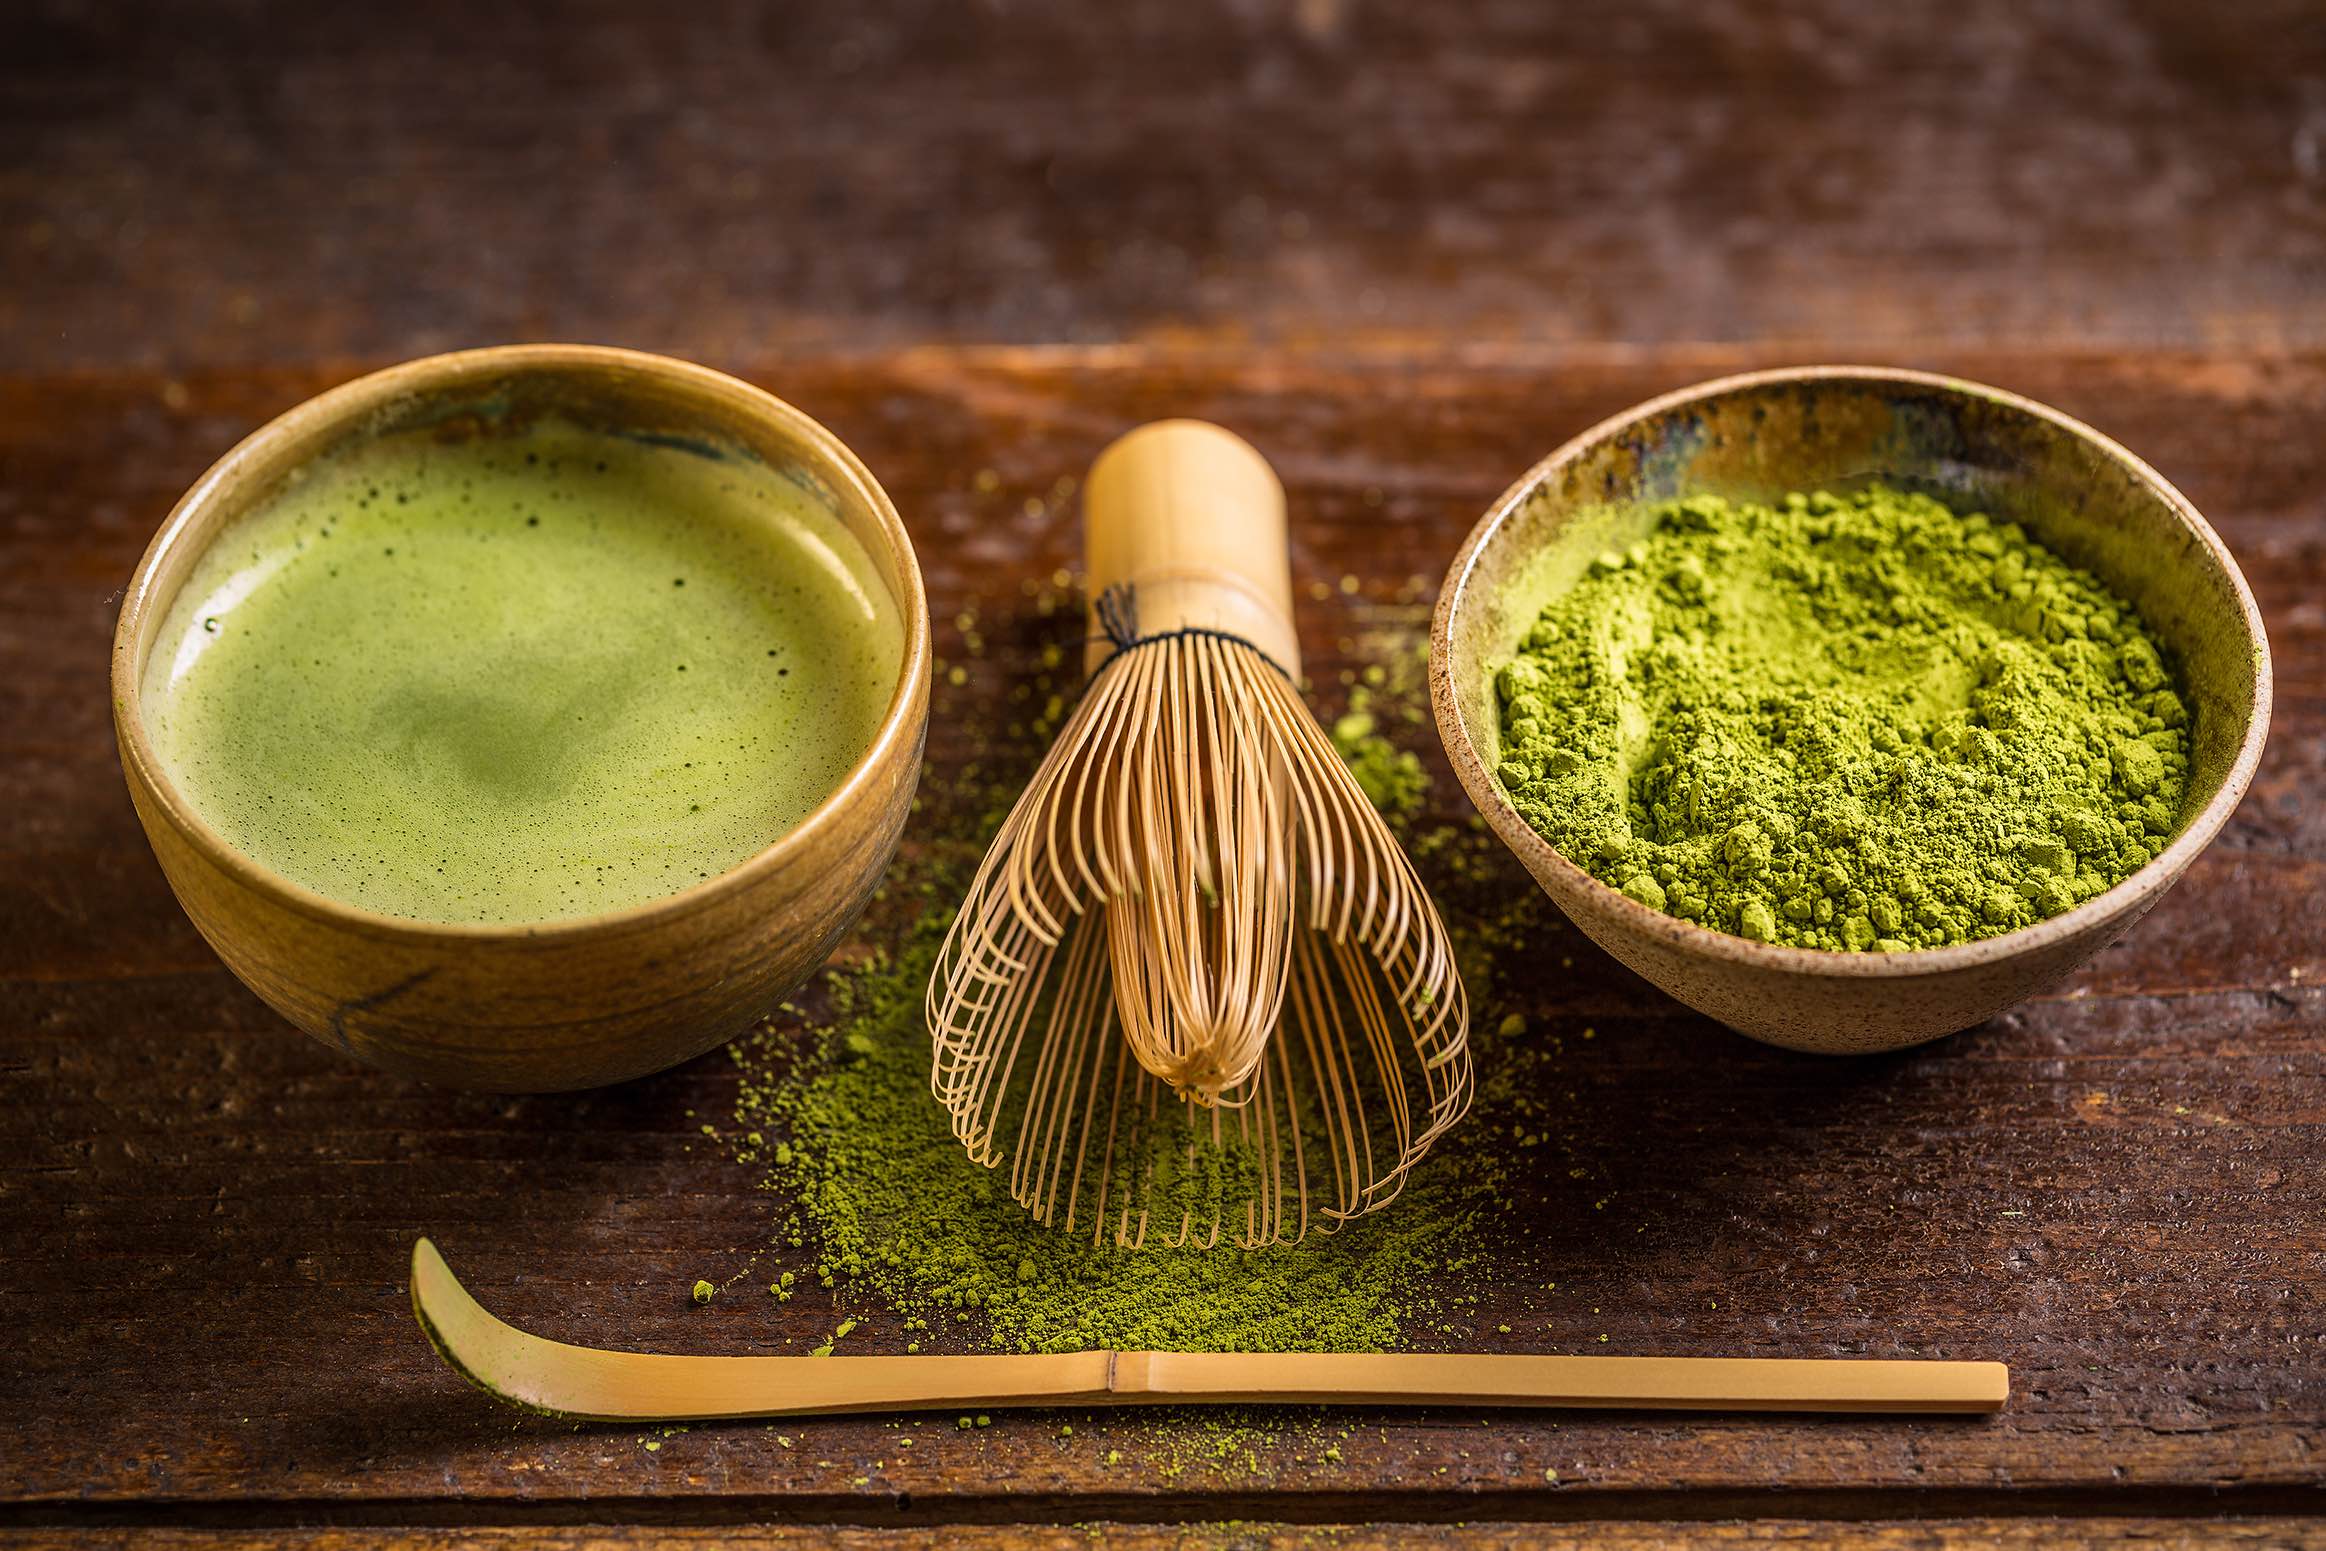 aufgeschäumter Matcha-Tee in einer Bambustasse, daneben ein kleiner Bambusbesen und eine schale mit Match-Teepulver.